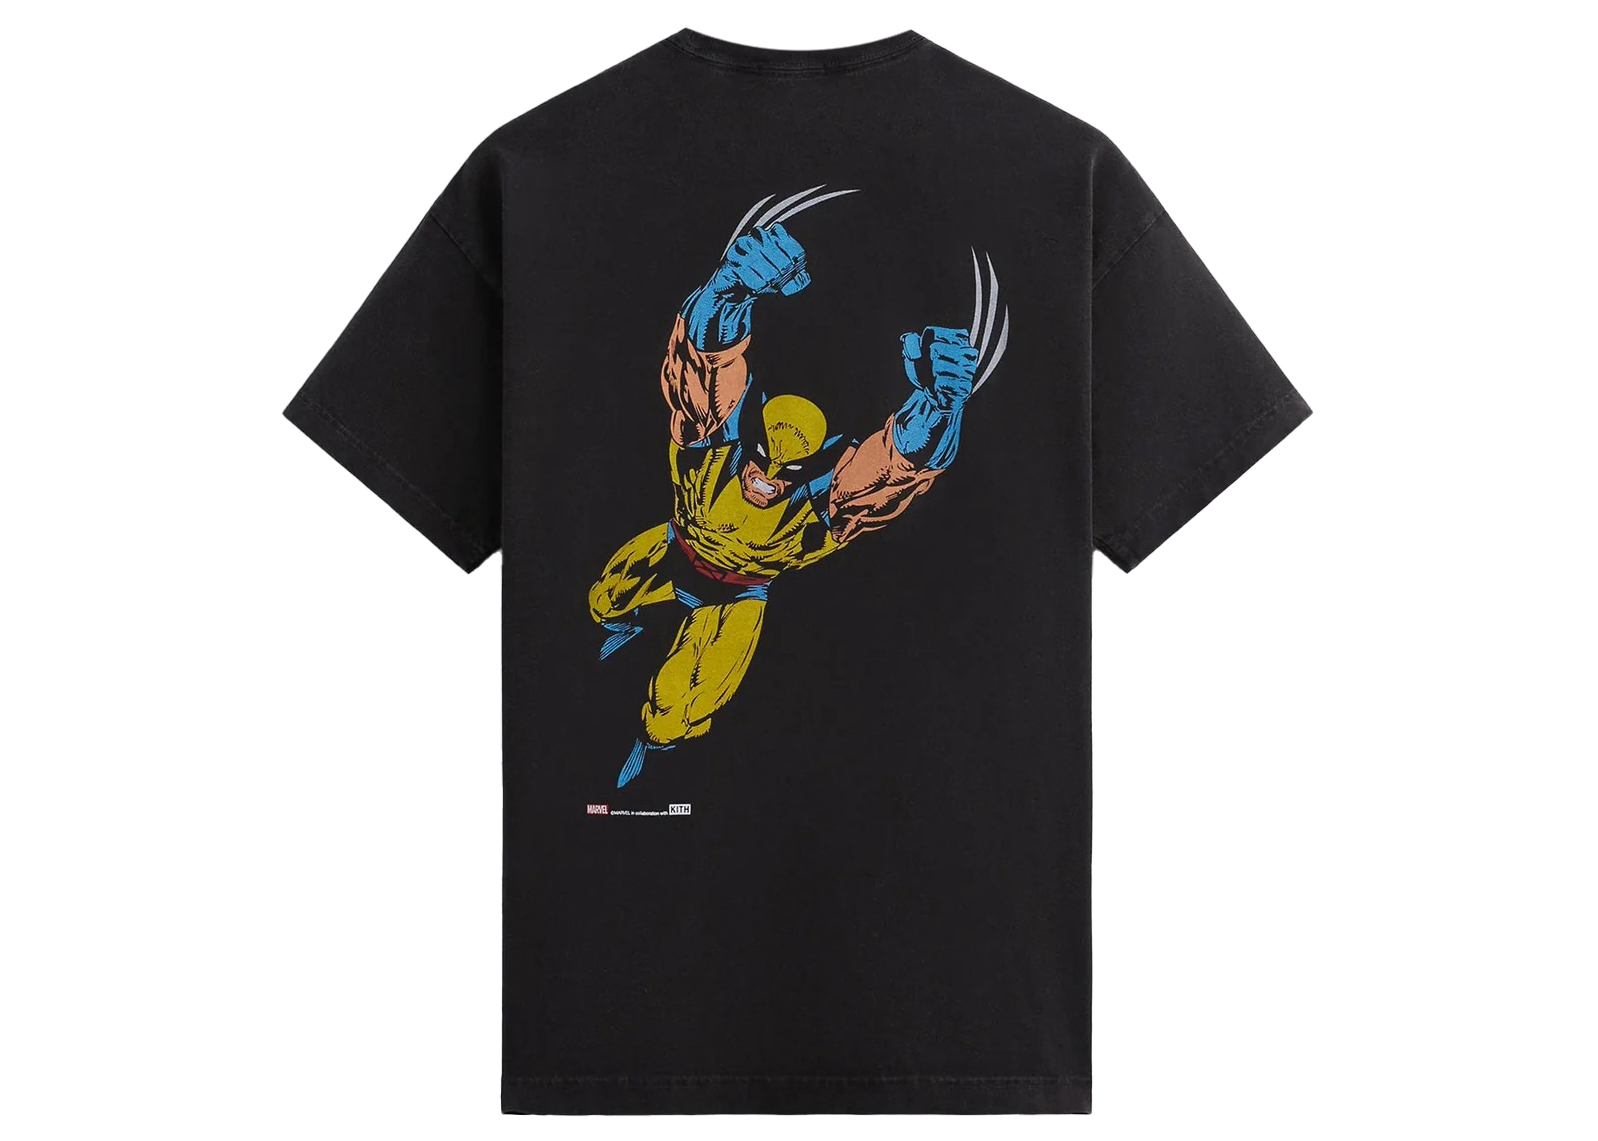 Marvel Kith for X-Men Wolverine Tee新品未使用です